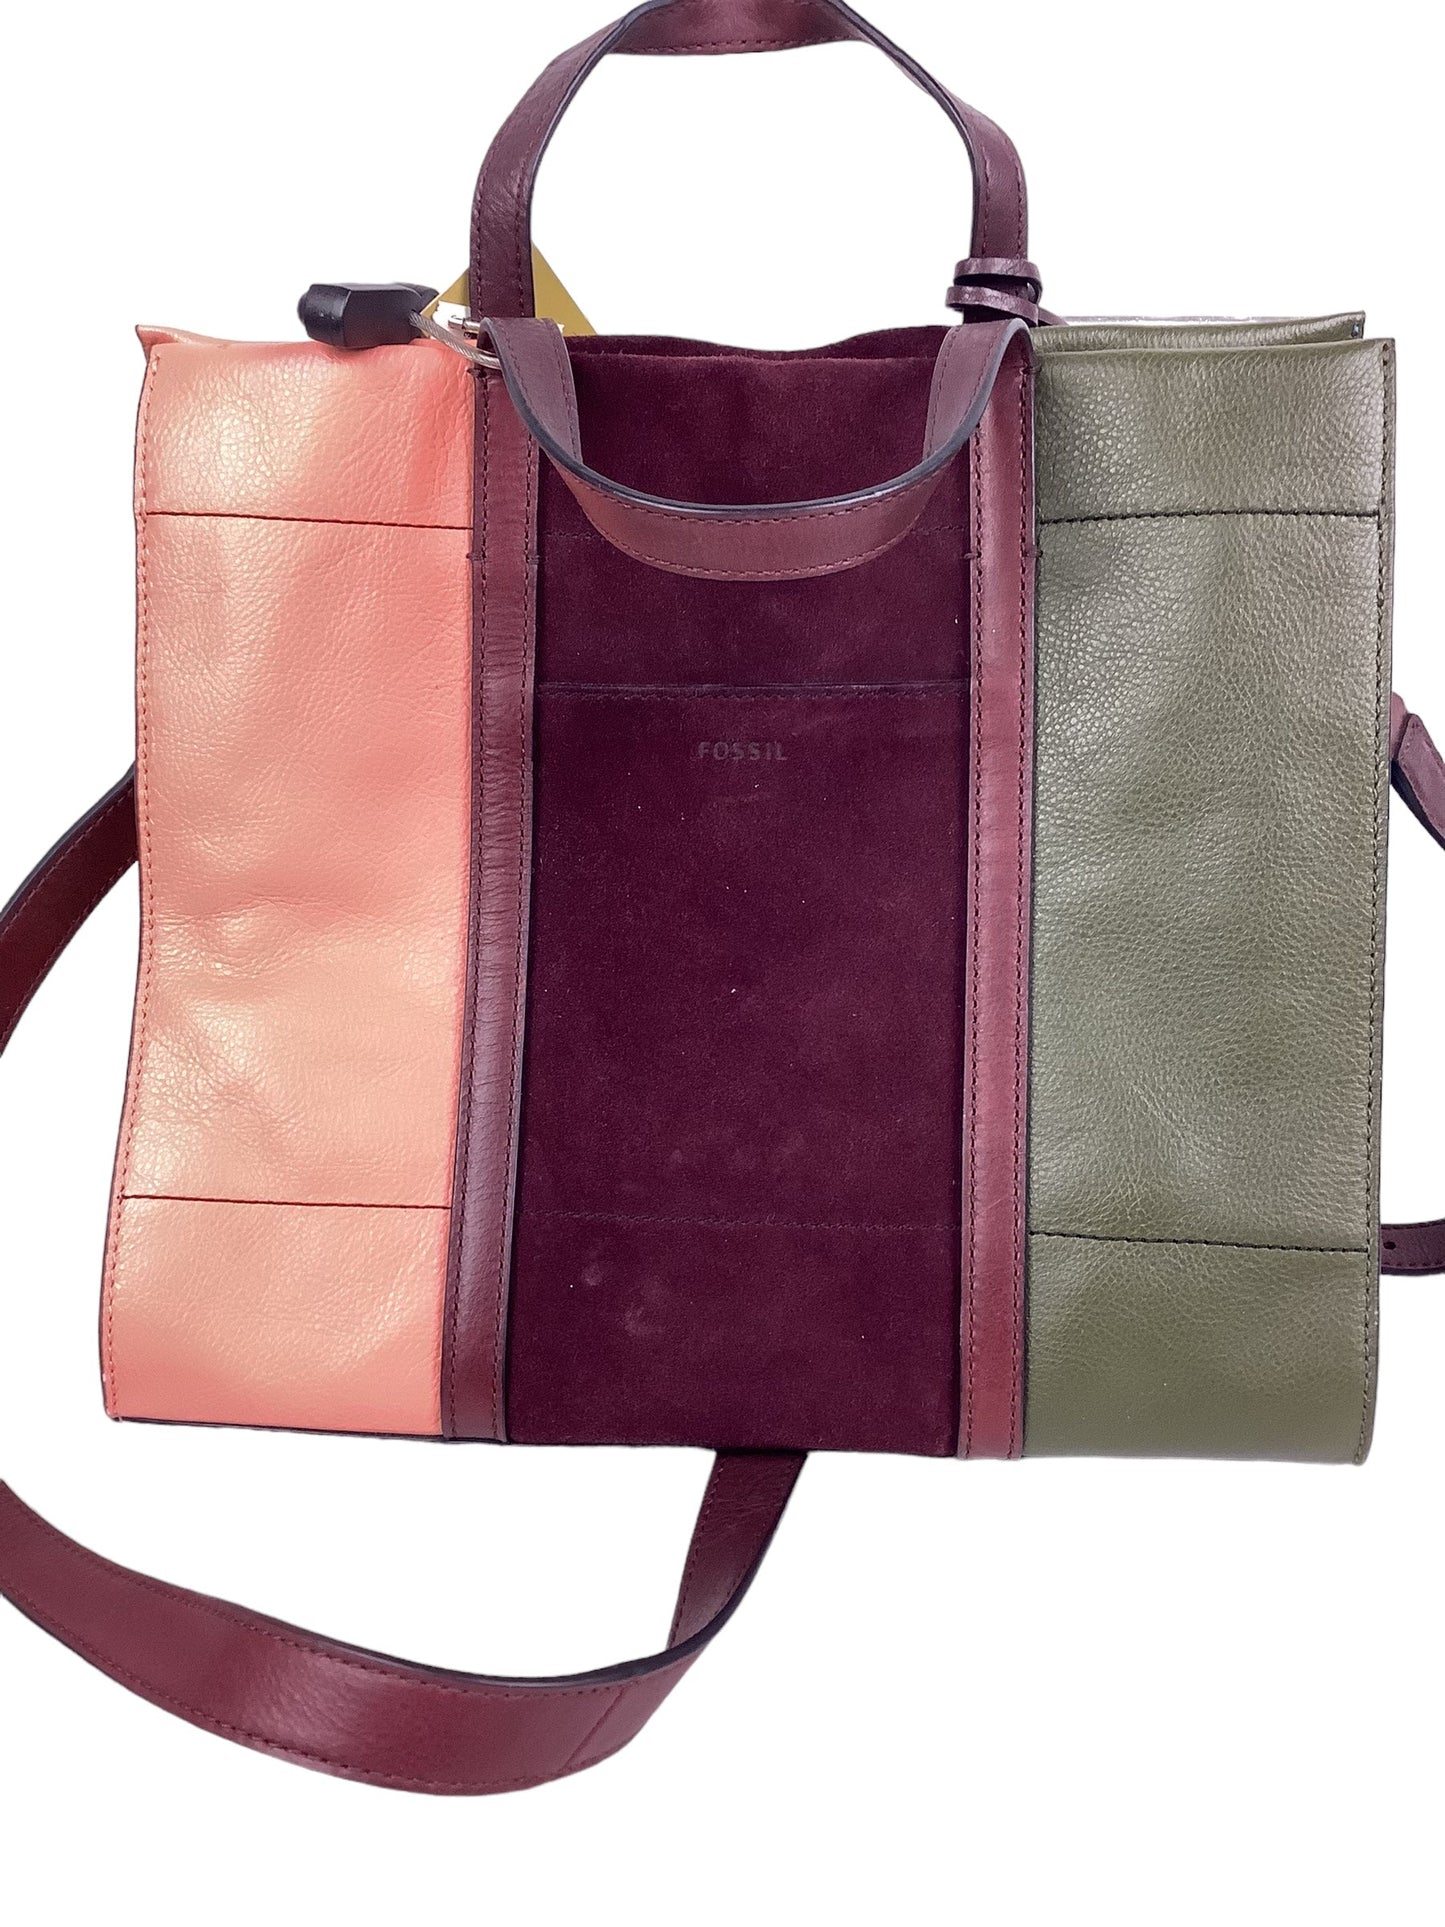 Handbag Designer Fossil, Size Medium